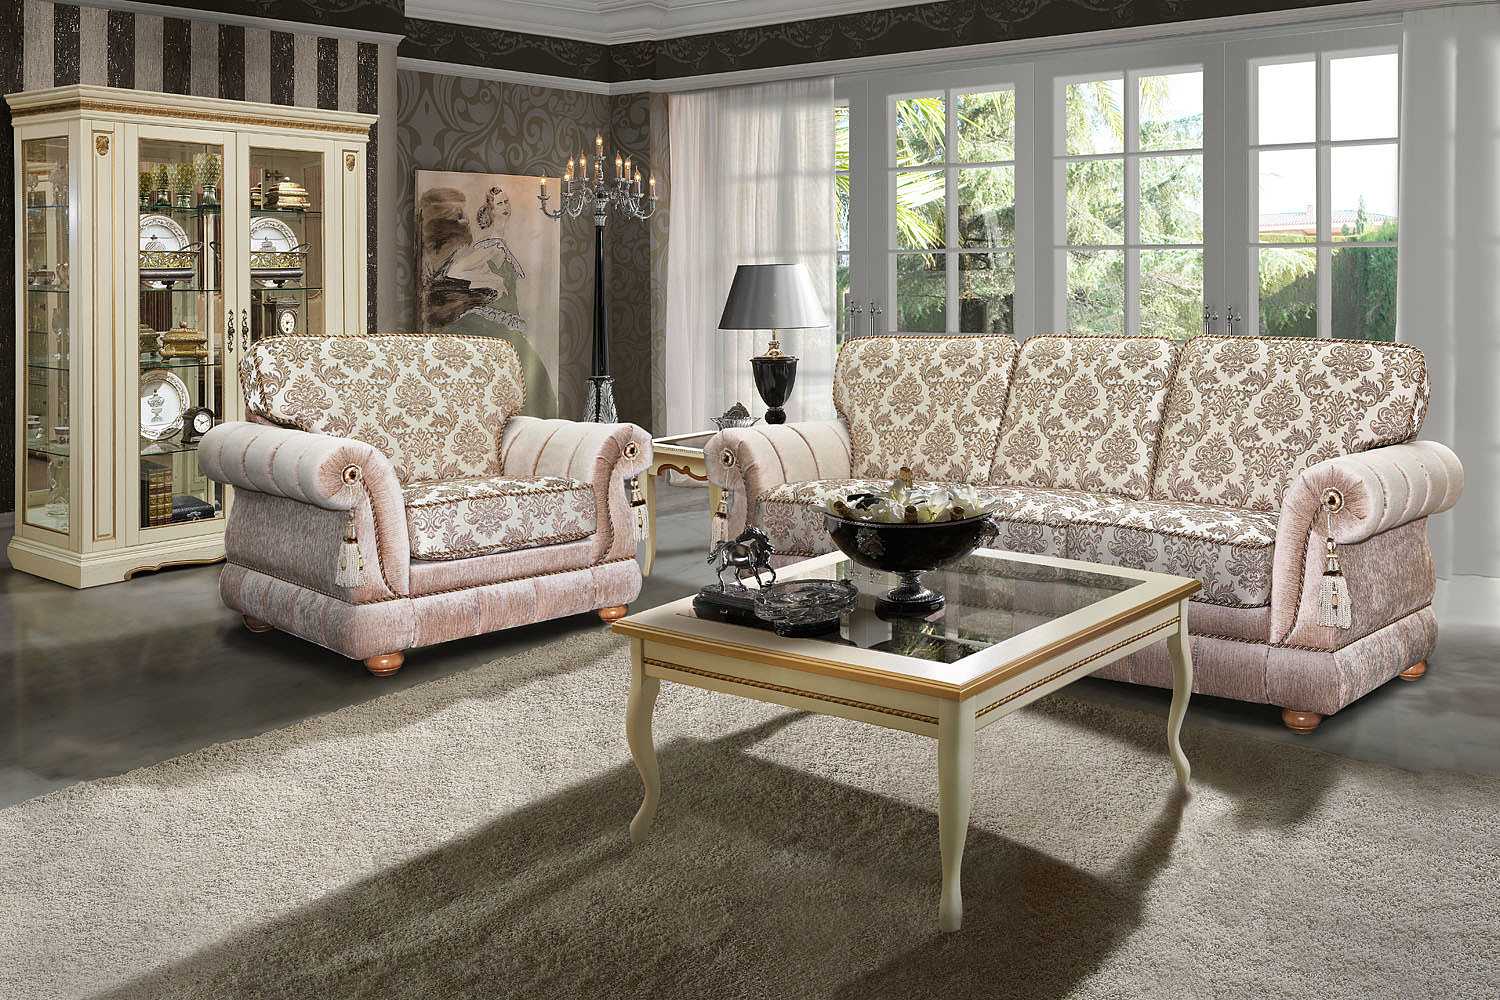 Как выбрать диван для гостиной: критерии выбора предмета мебели